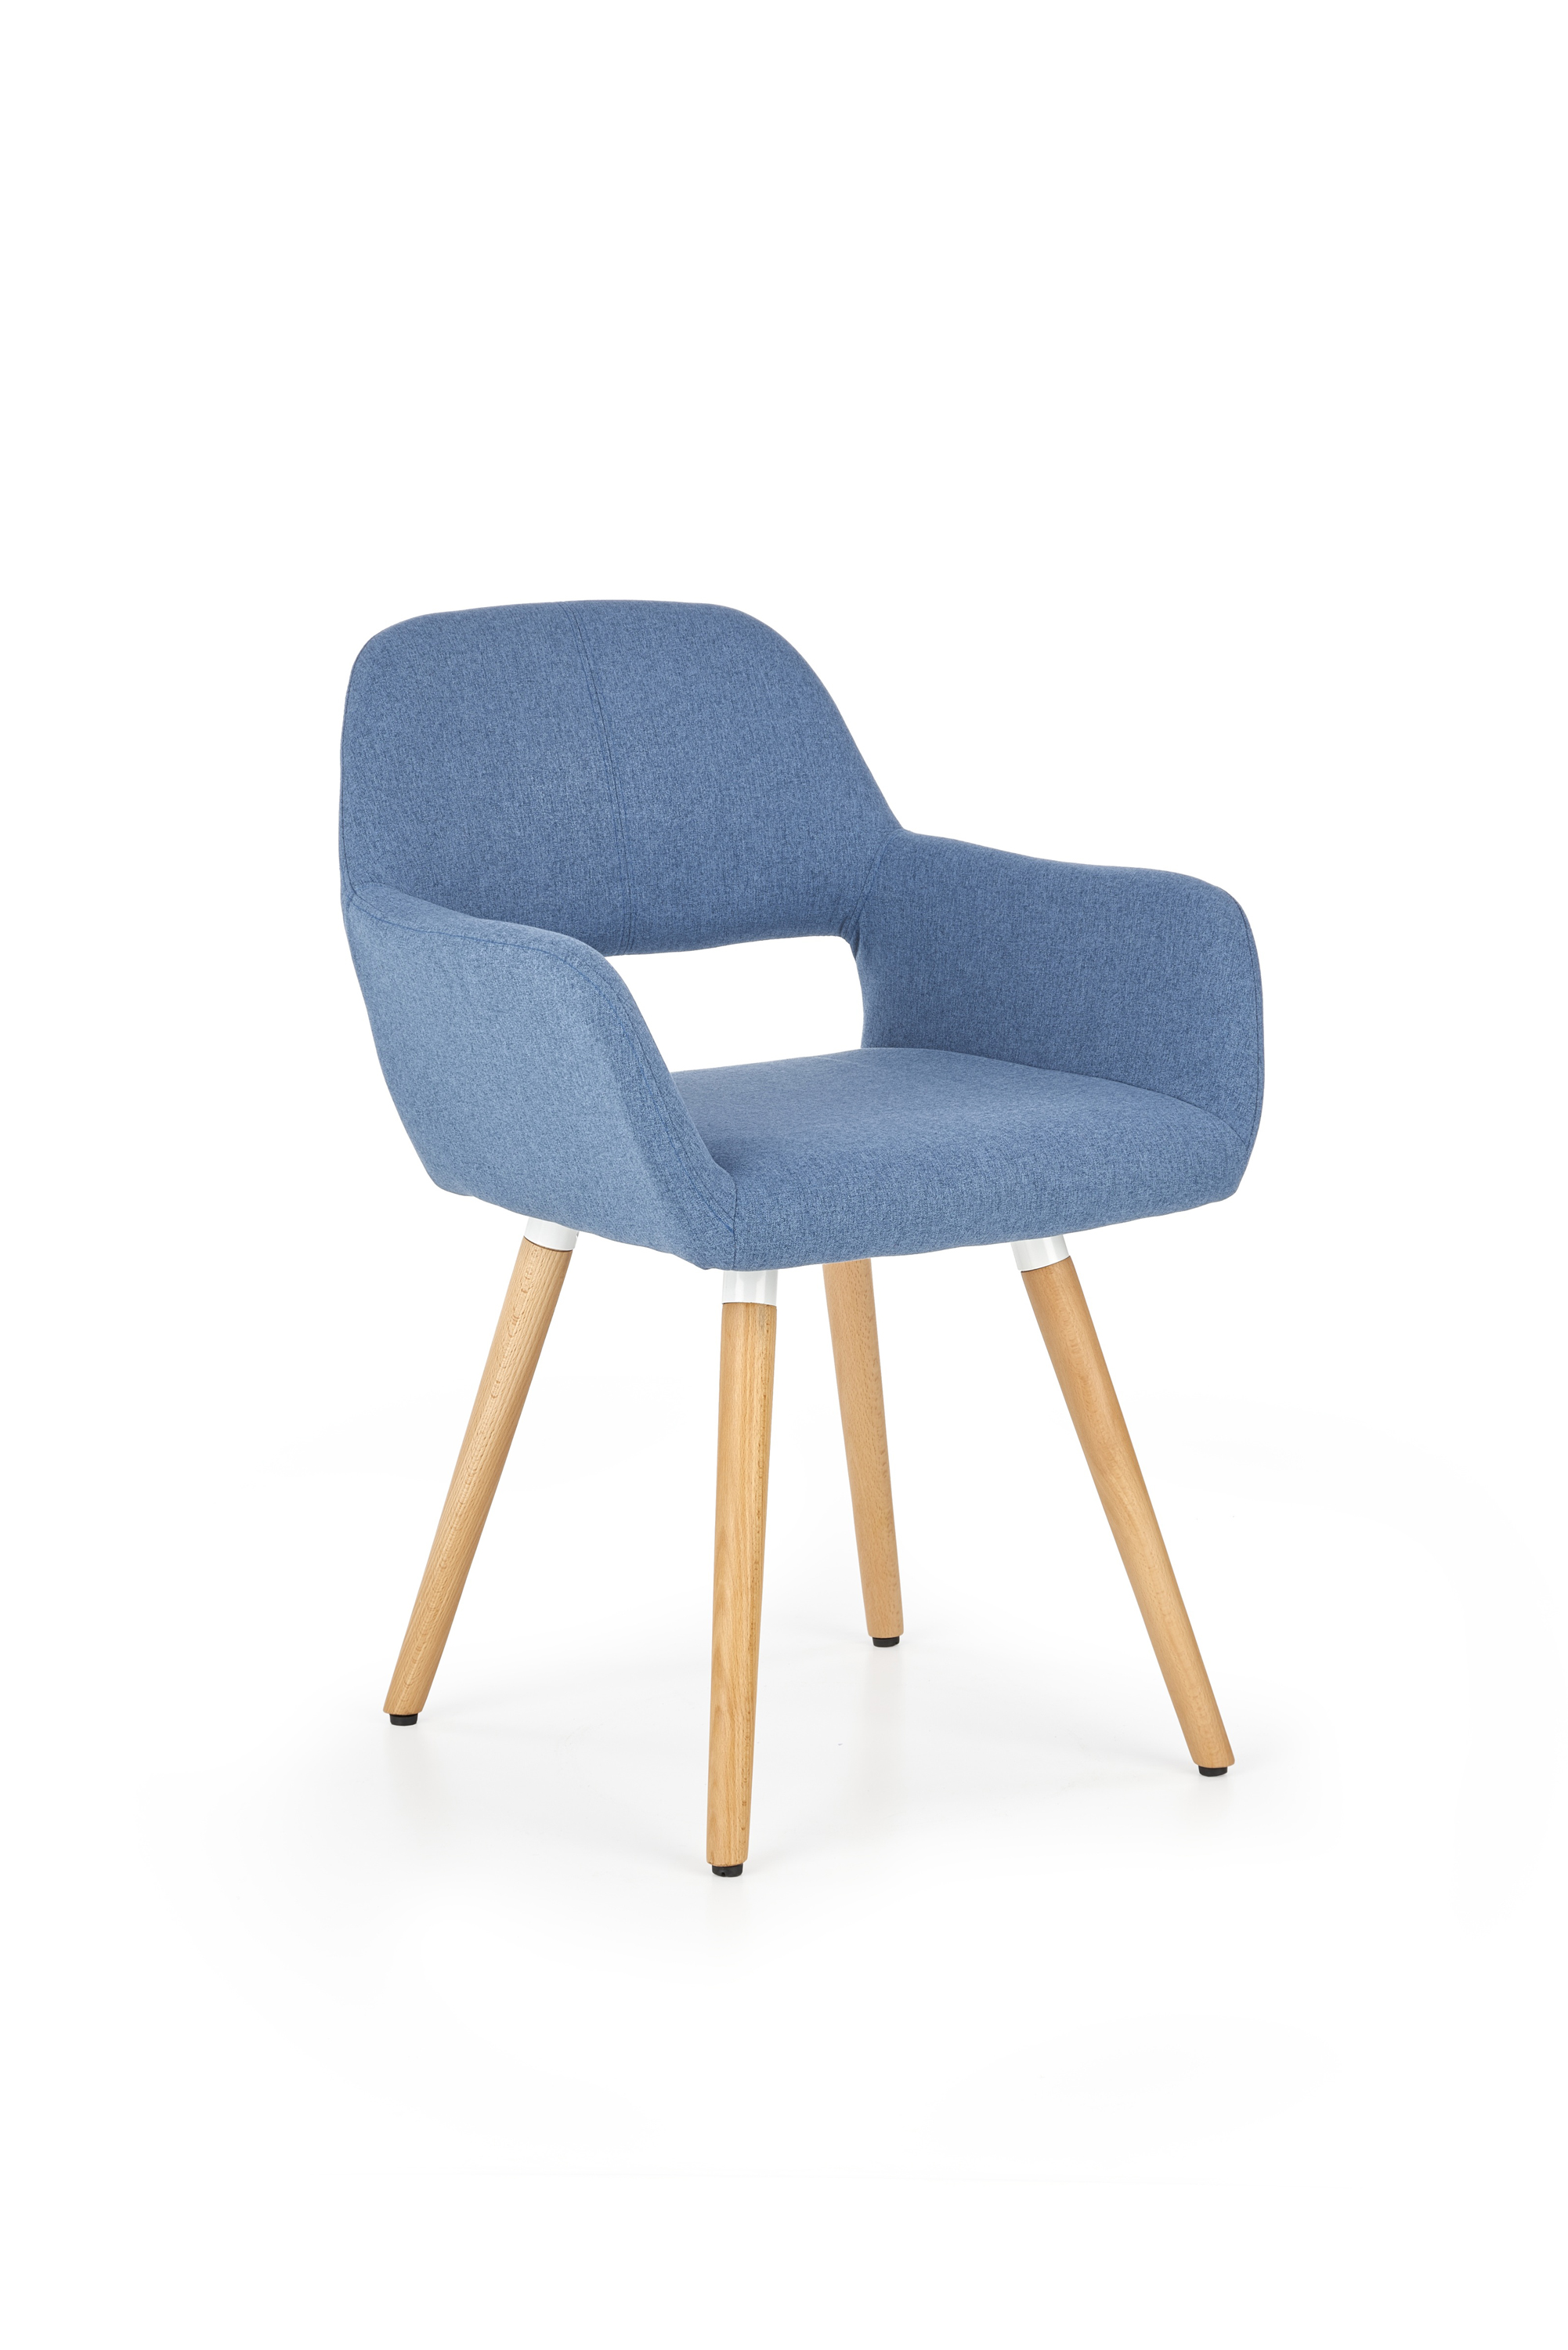 K283 krzesło niebieskie